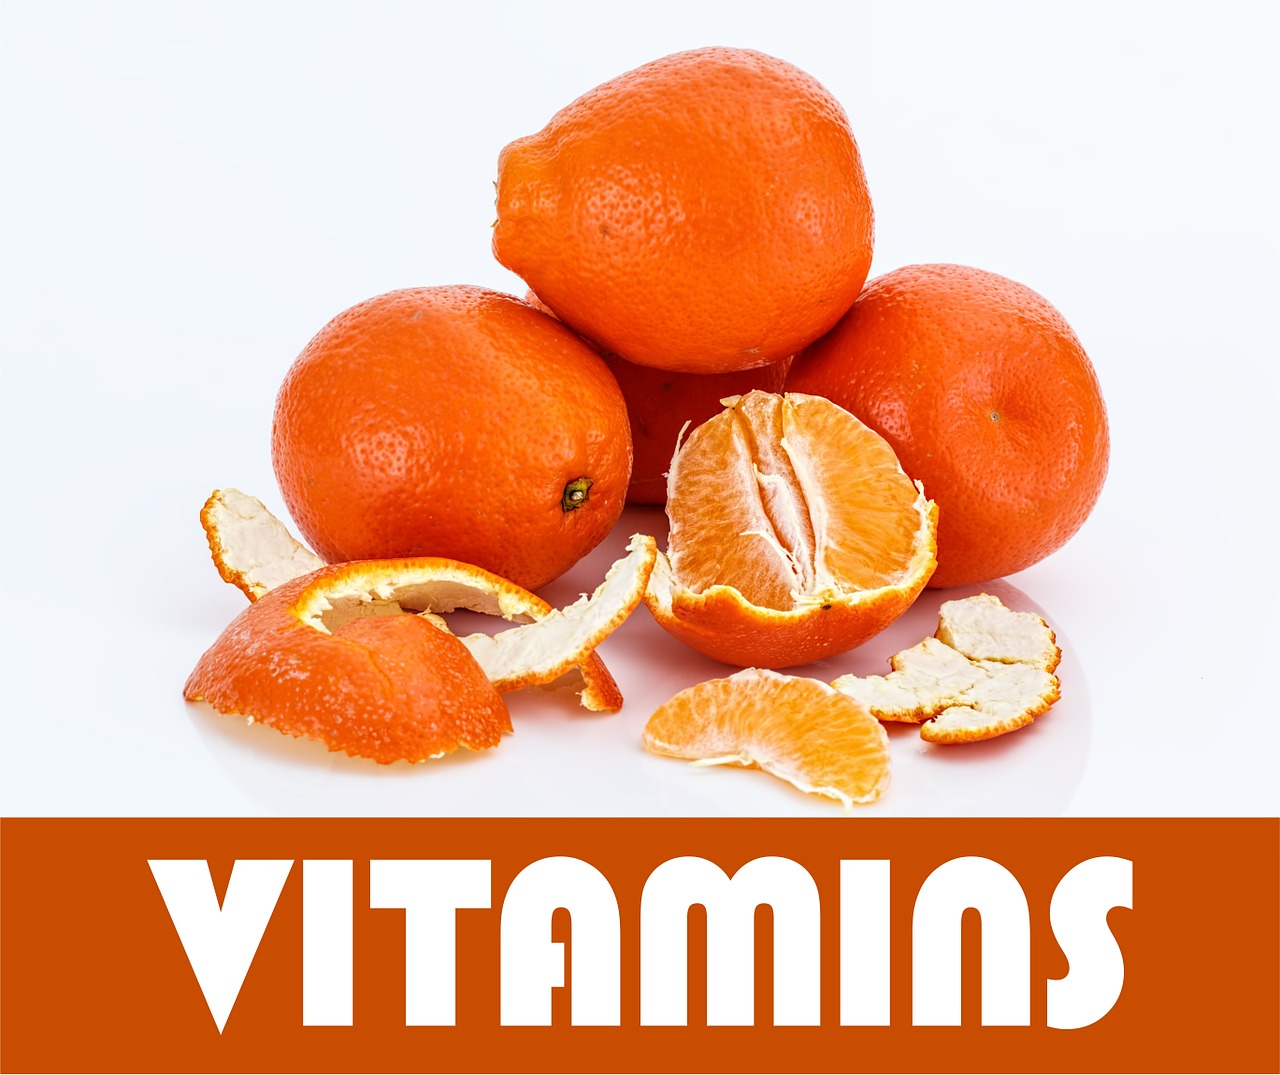 Vitaminai, Oranžinė, Vaisiai, Sveikata, Sveika Mityba, Mityba, Apelsinai, Pluoštas, Tropiniai Vaisiai, Valgymas